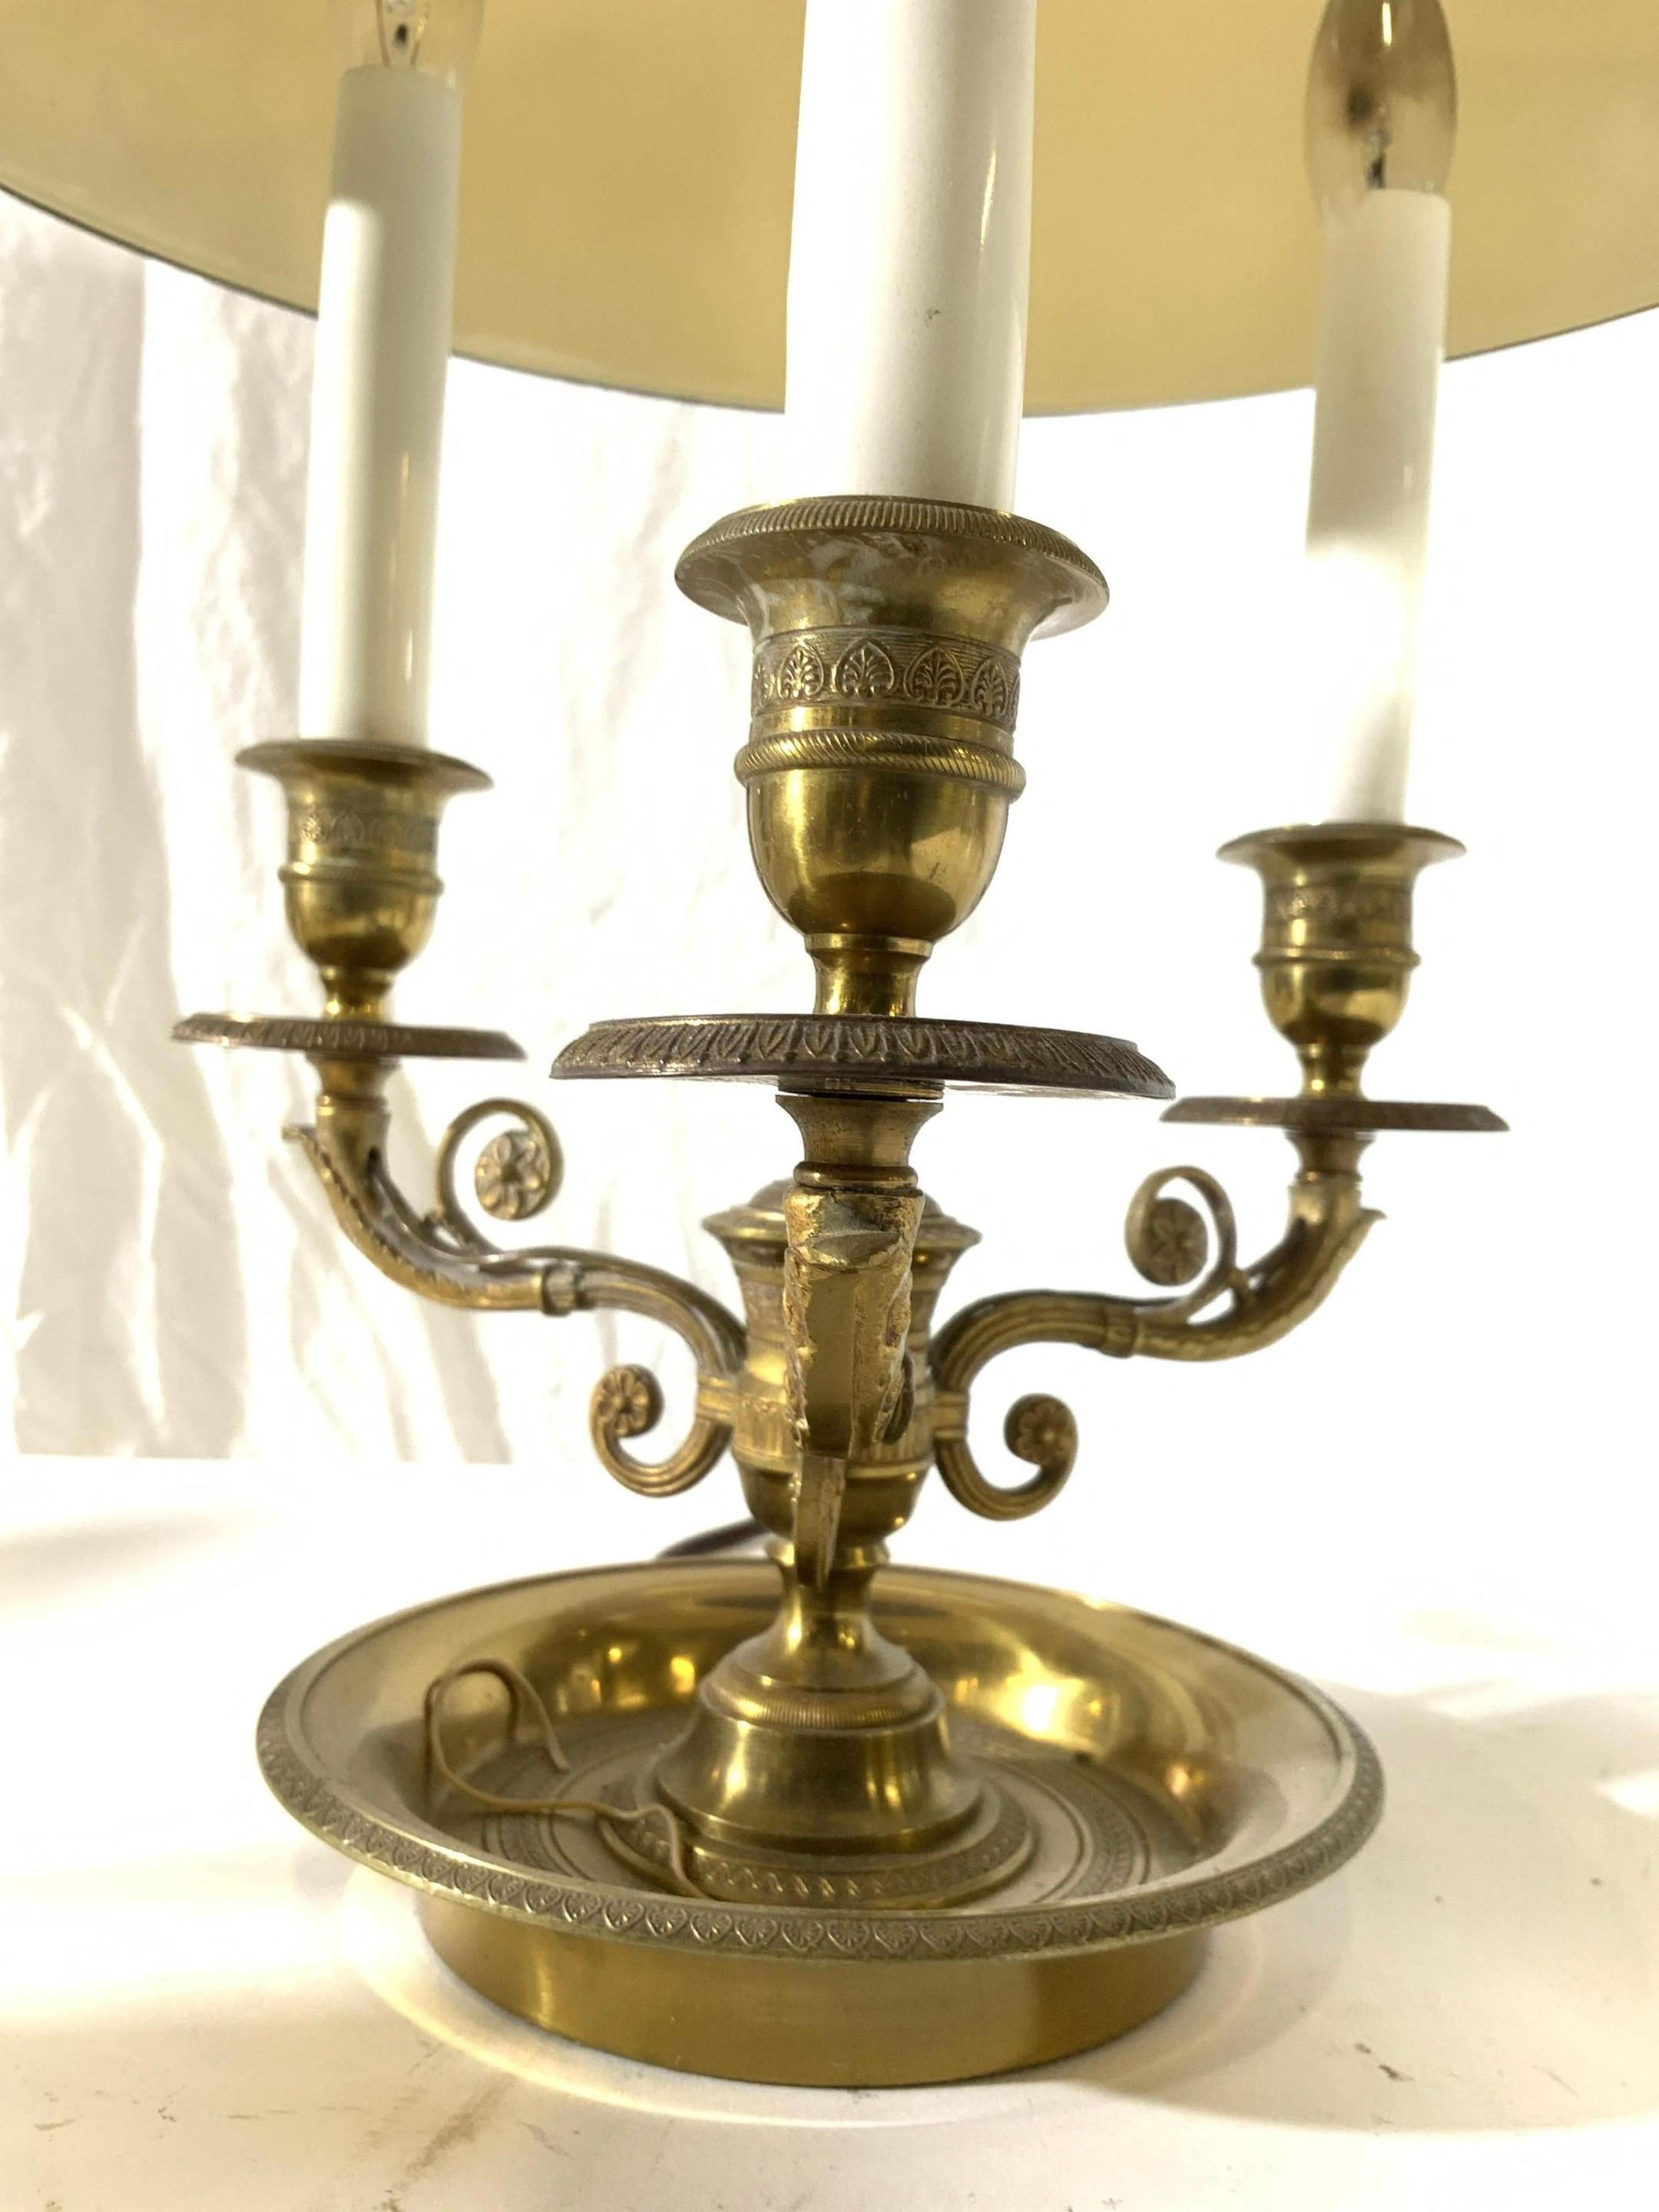 Lampe tole française antique Napoléonienne avec base et bras en laiton doré. Les bras ont des structures ornées de courbes en S. Chaque bras est doté d'une douille pour ampoule de style chandelier aux extrémités. La partie supérieure de la lampe